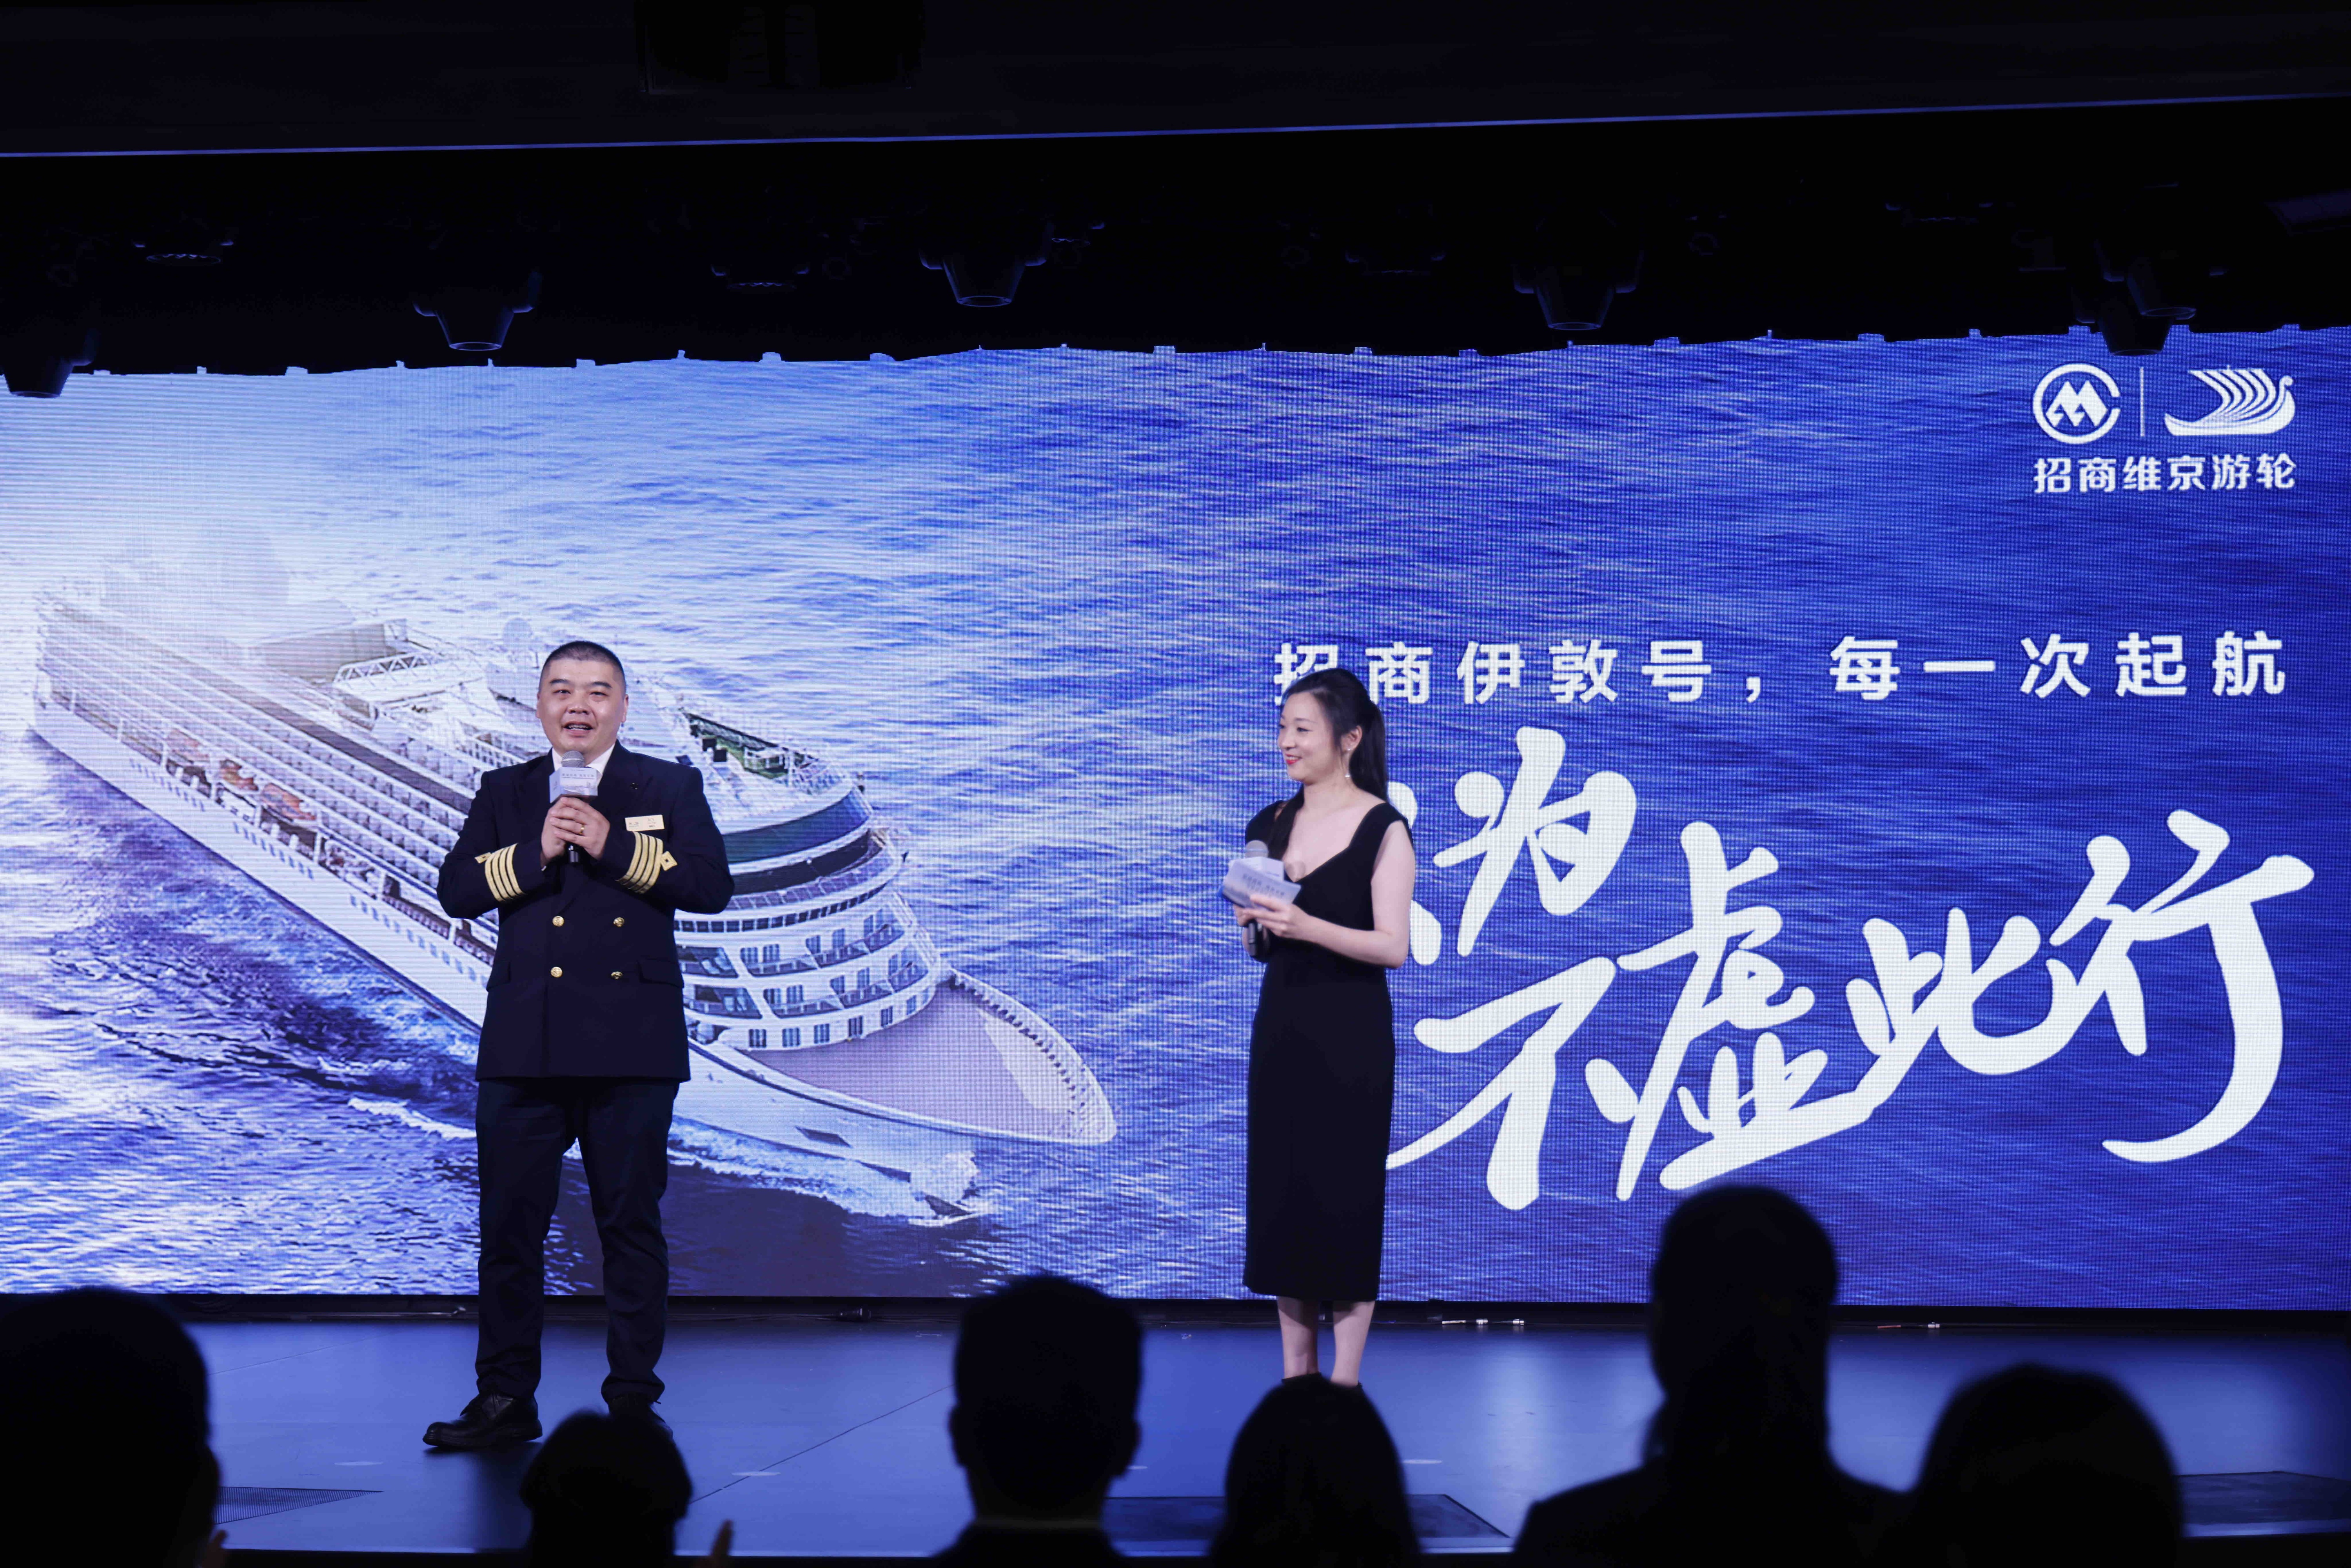 启航仪式现场，我国第一支中国籍邮轮船员队伍管理团队代表分享了在“招商伊敦号”的工作感受。